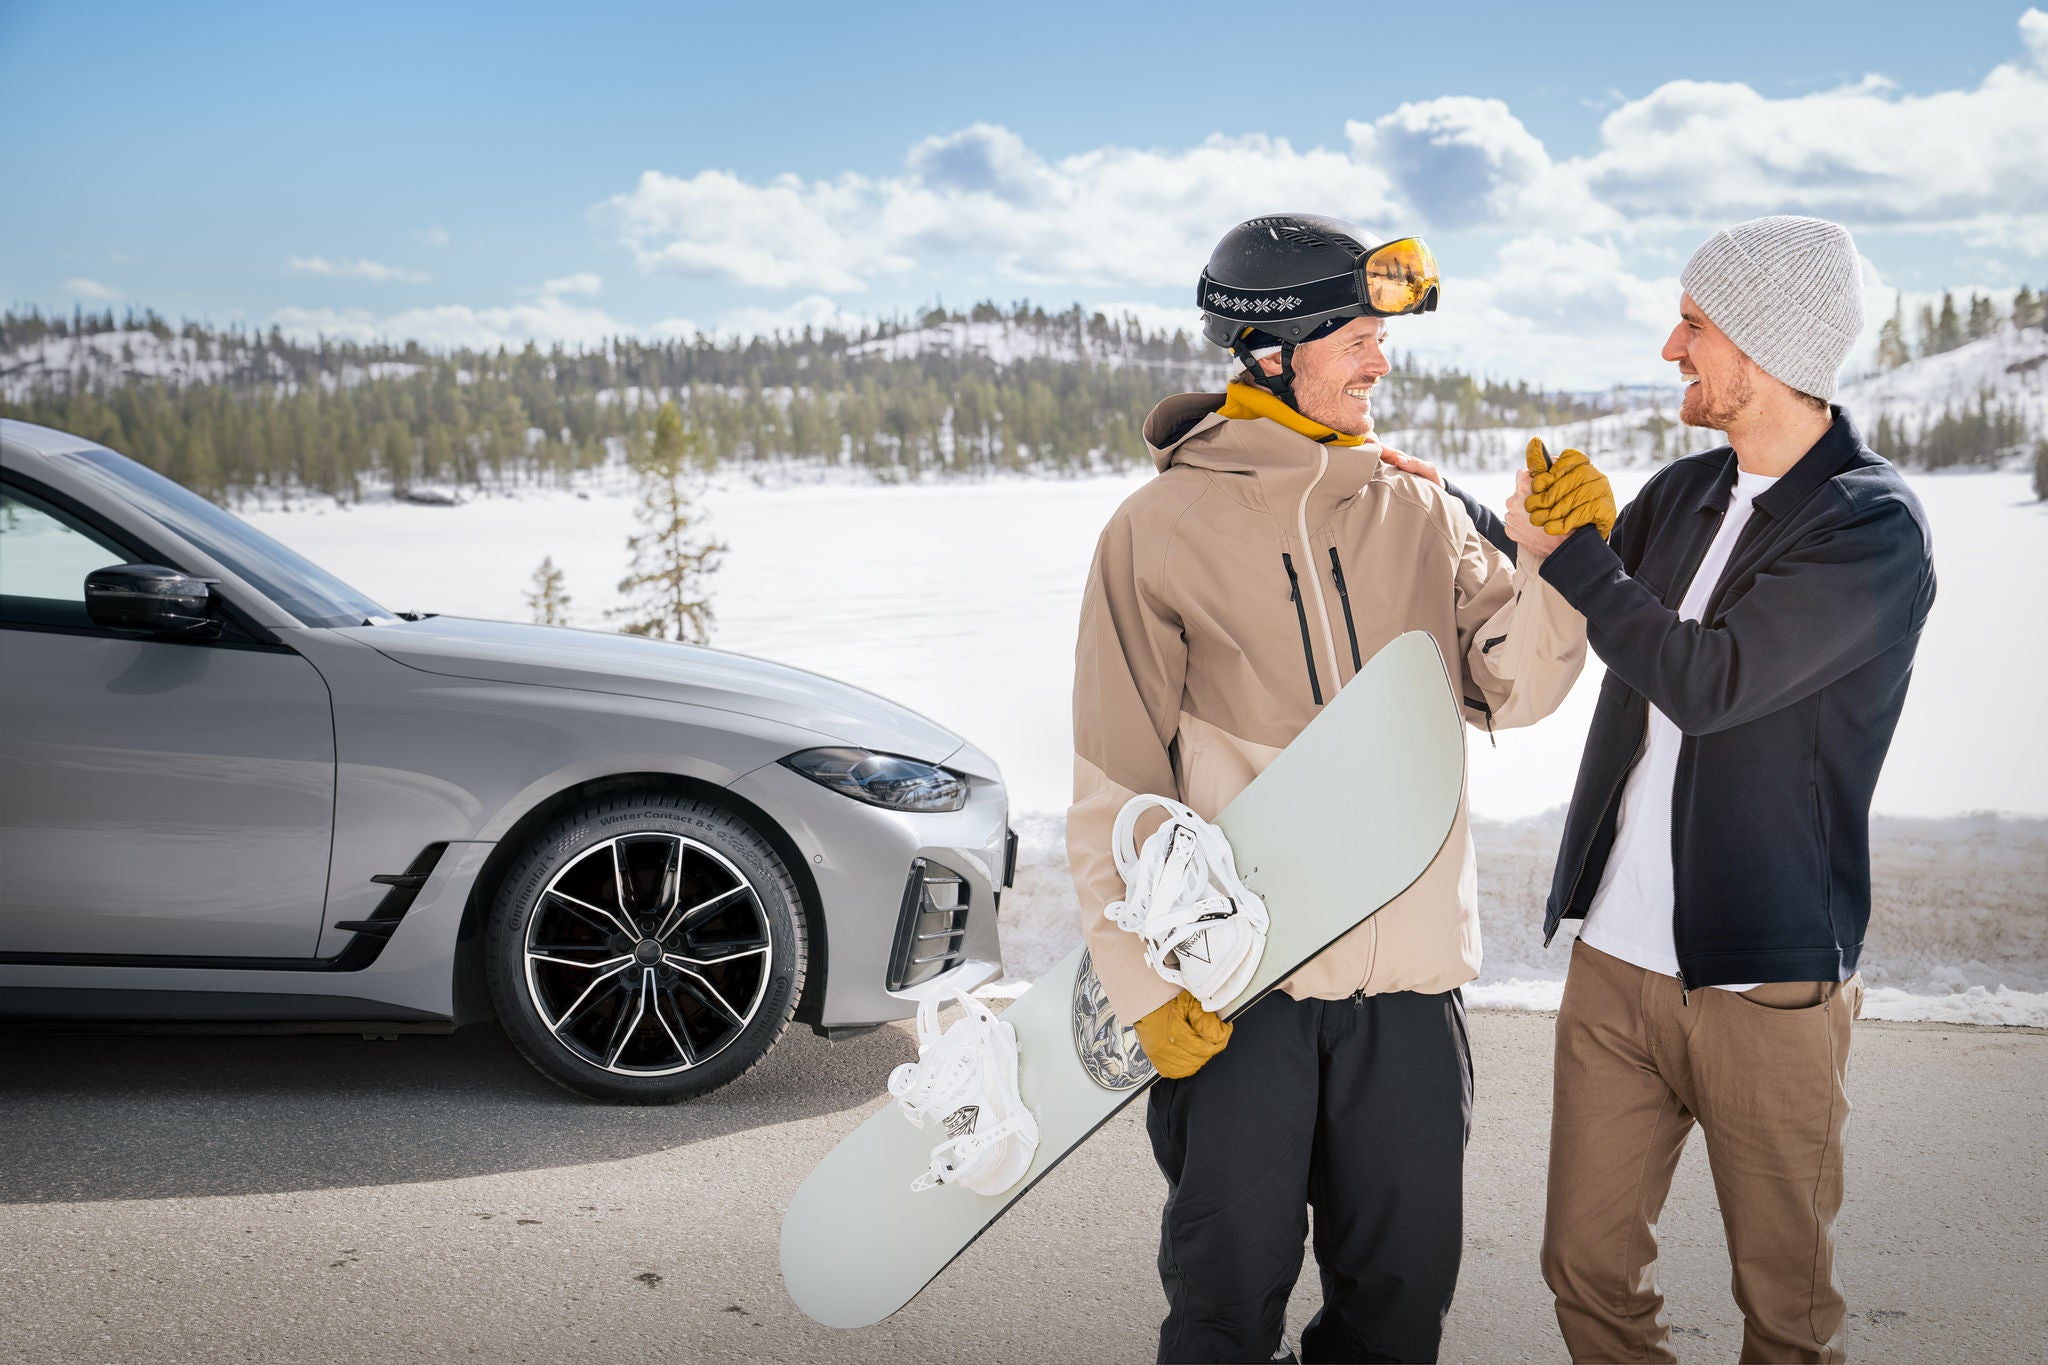 Der WinterContact 8 S ist der perfekte Reifen für die Fahrt zum Snowboard-Abenteuer.